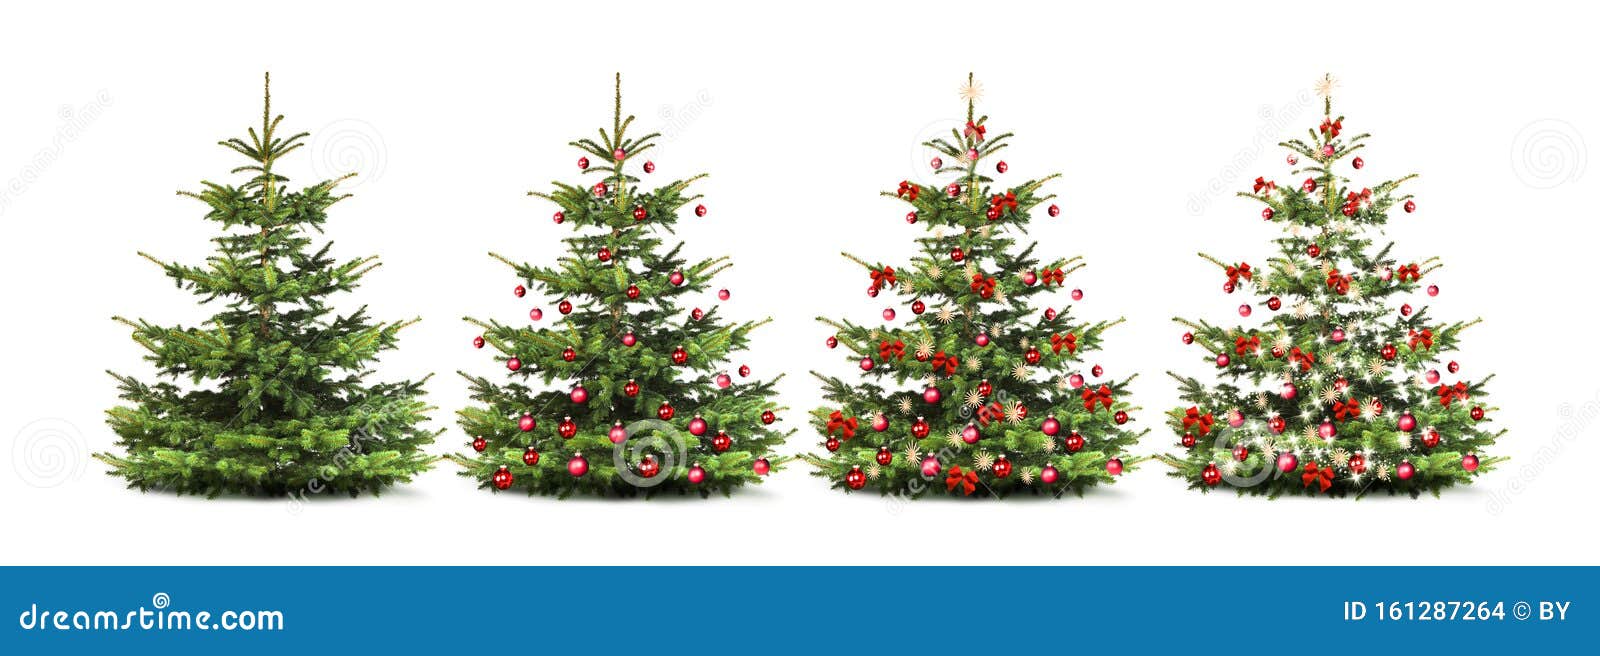 geschmÃÂ¼ckter weihnachtsbaum mit bunten weihnachtskugeln isoliert auf weiÃÅ¸em hintergrund